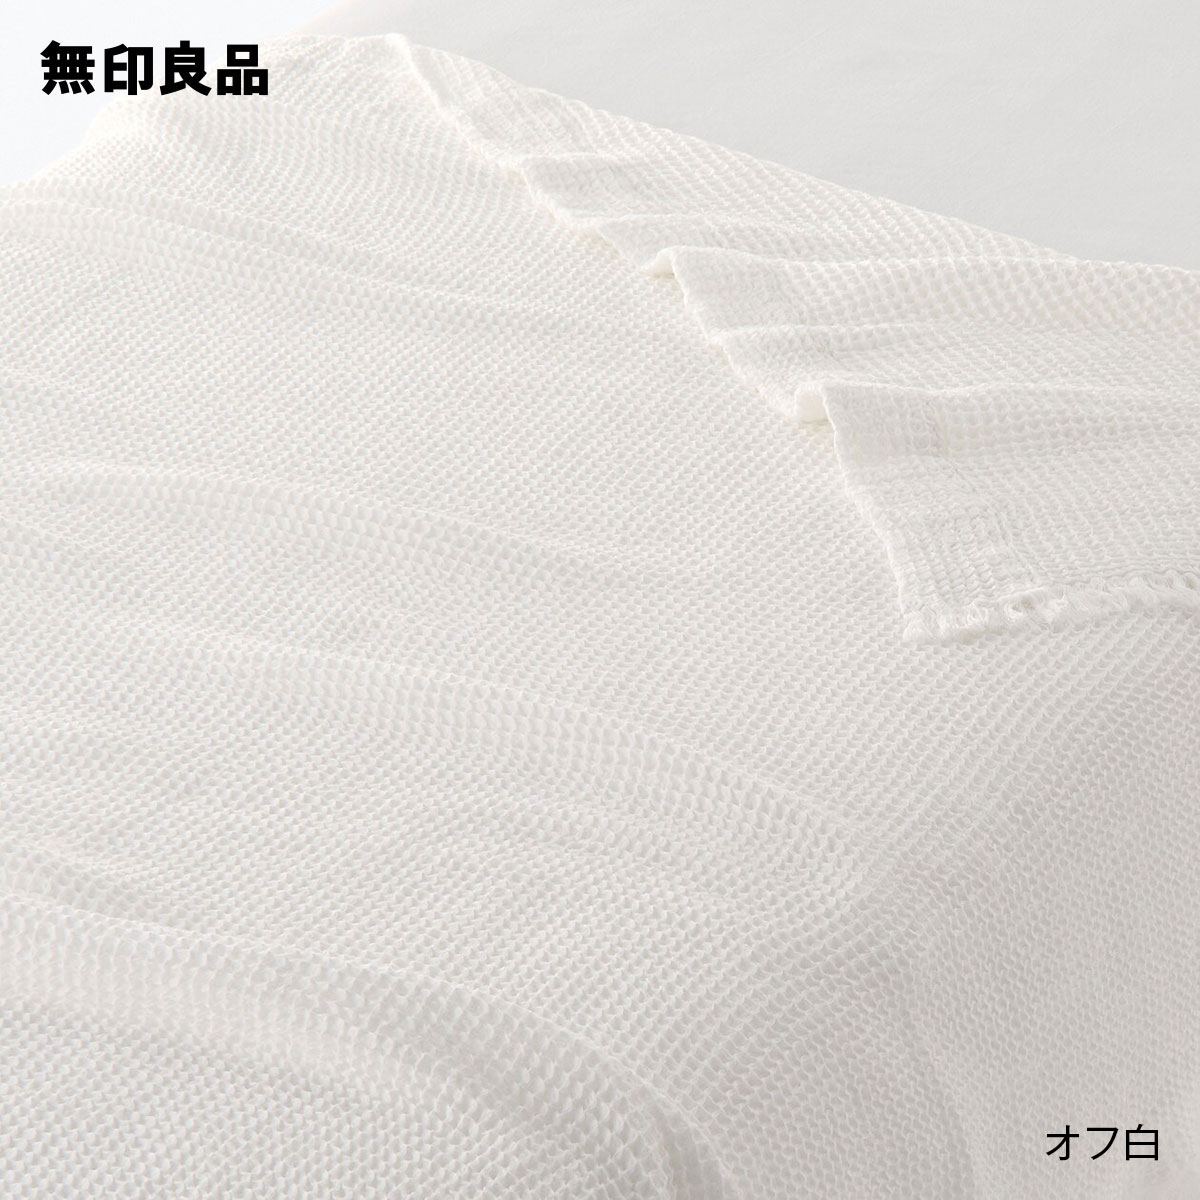 無印良品の【ダブル】ワッフル織ケット・180×200cm(布団・寝具)